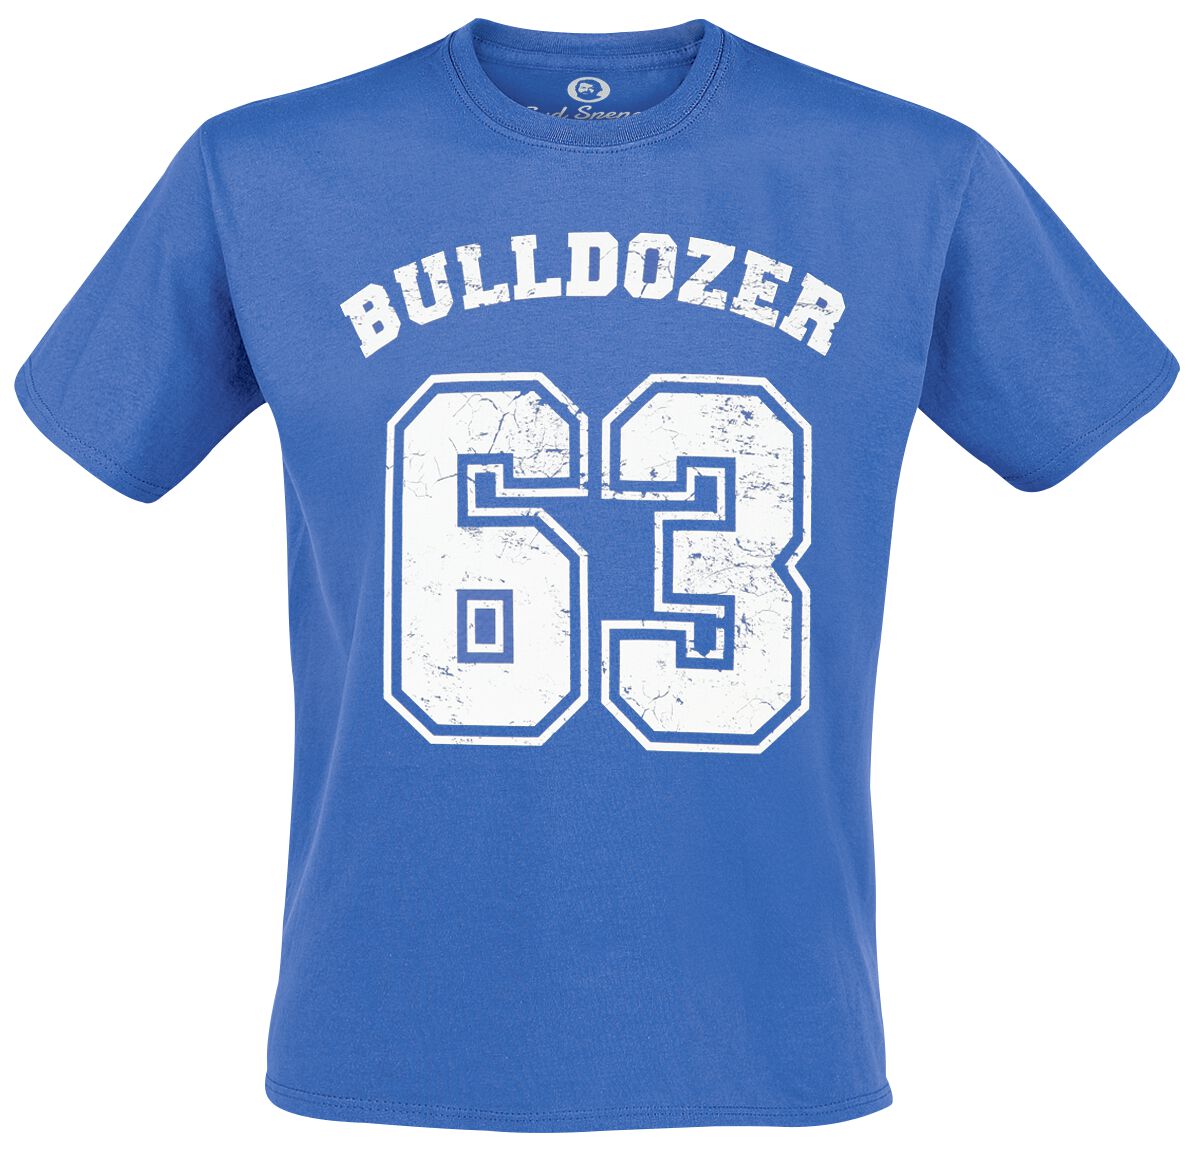 Bud Spencer T-Shirt - Bulldozer - M bis 5XL - für Männer - Größe 5XL - blau  - Lizenzierter Fanartikel von Bud Spencer